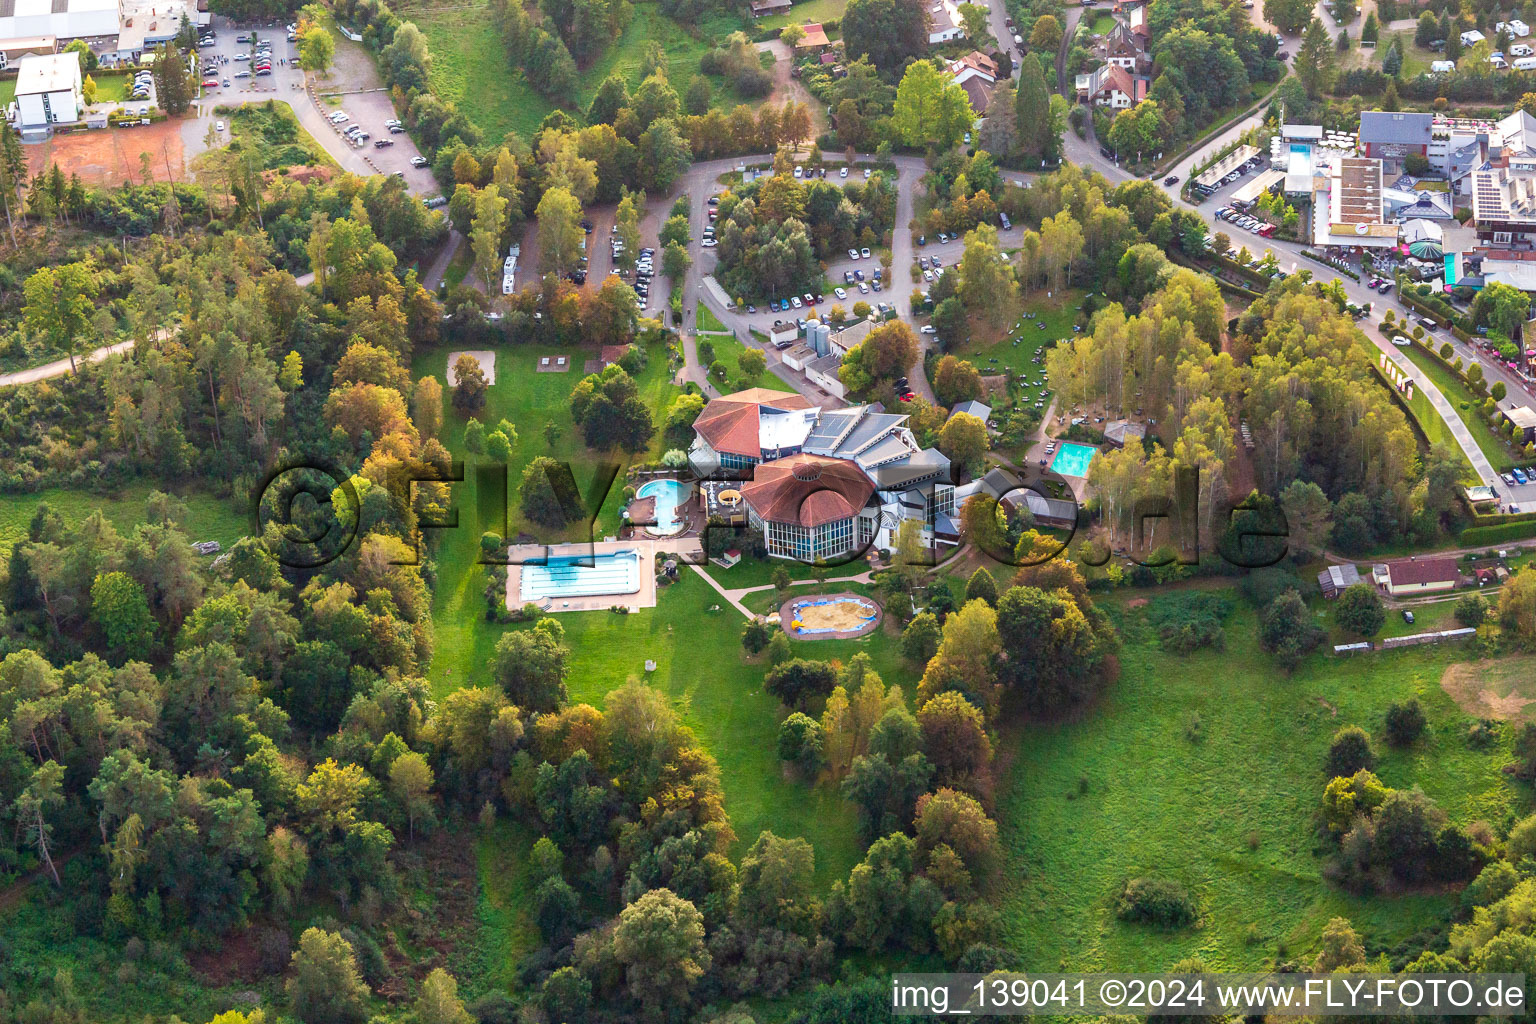 Vue aérienne de Paradis balnéaire de Felsland à Dahn dans le département Rhénanie-Palatinat, Allemagne